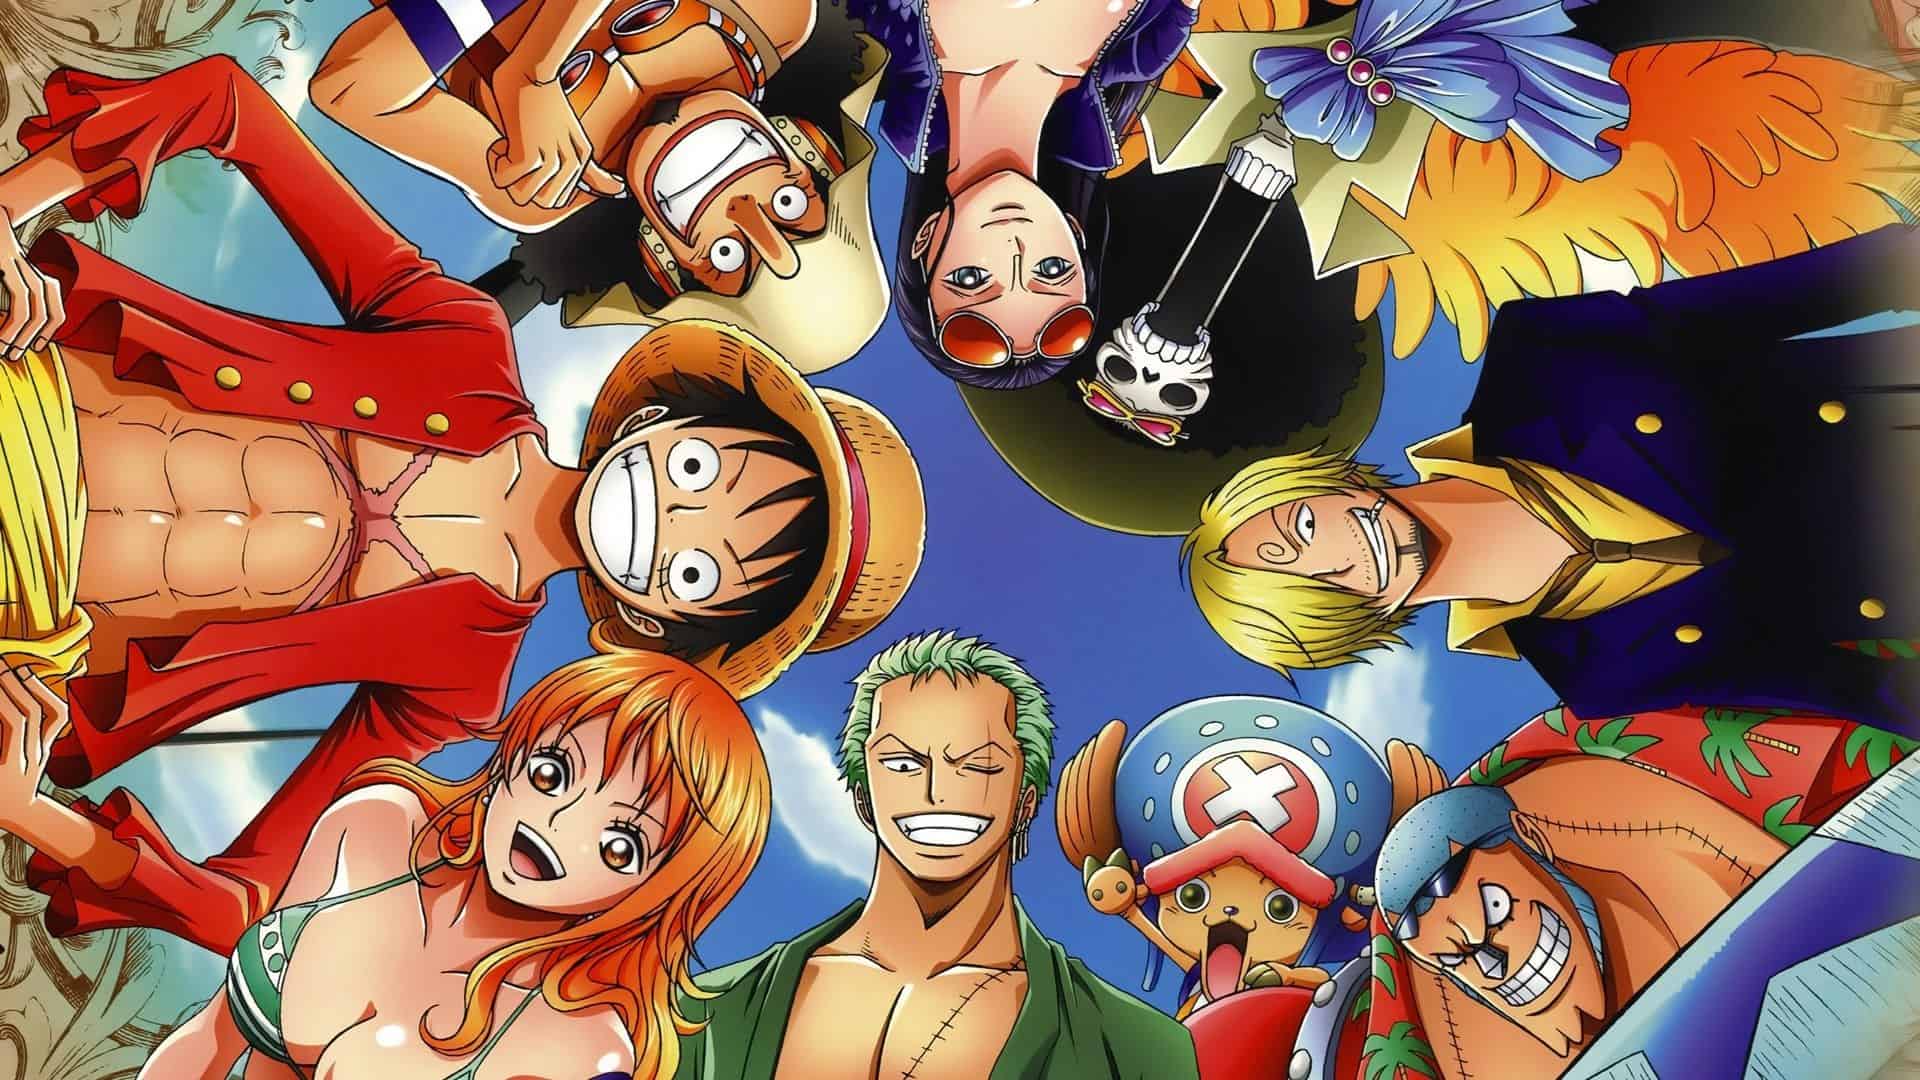 Hình One Piece quality cao